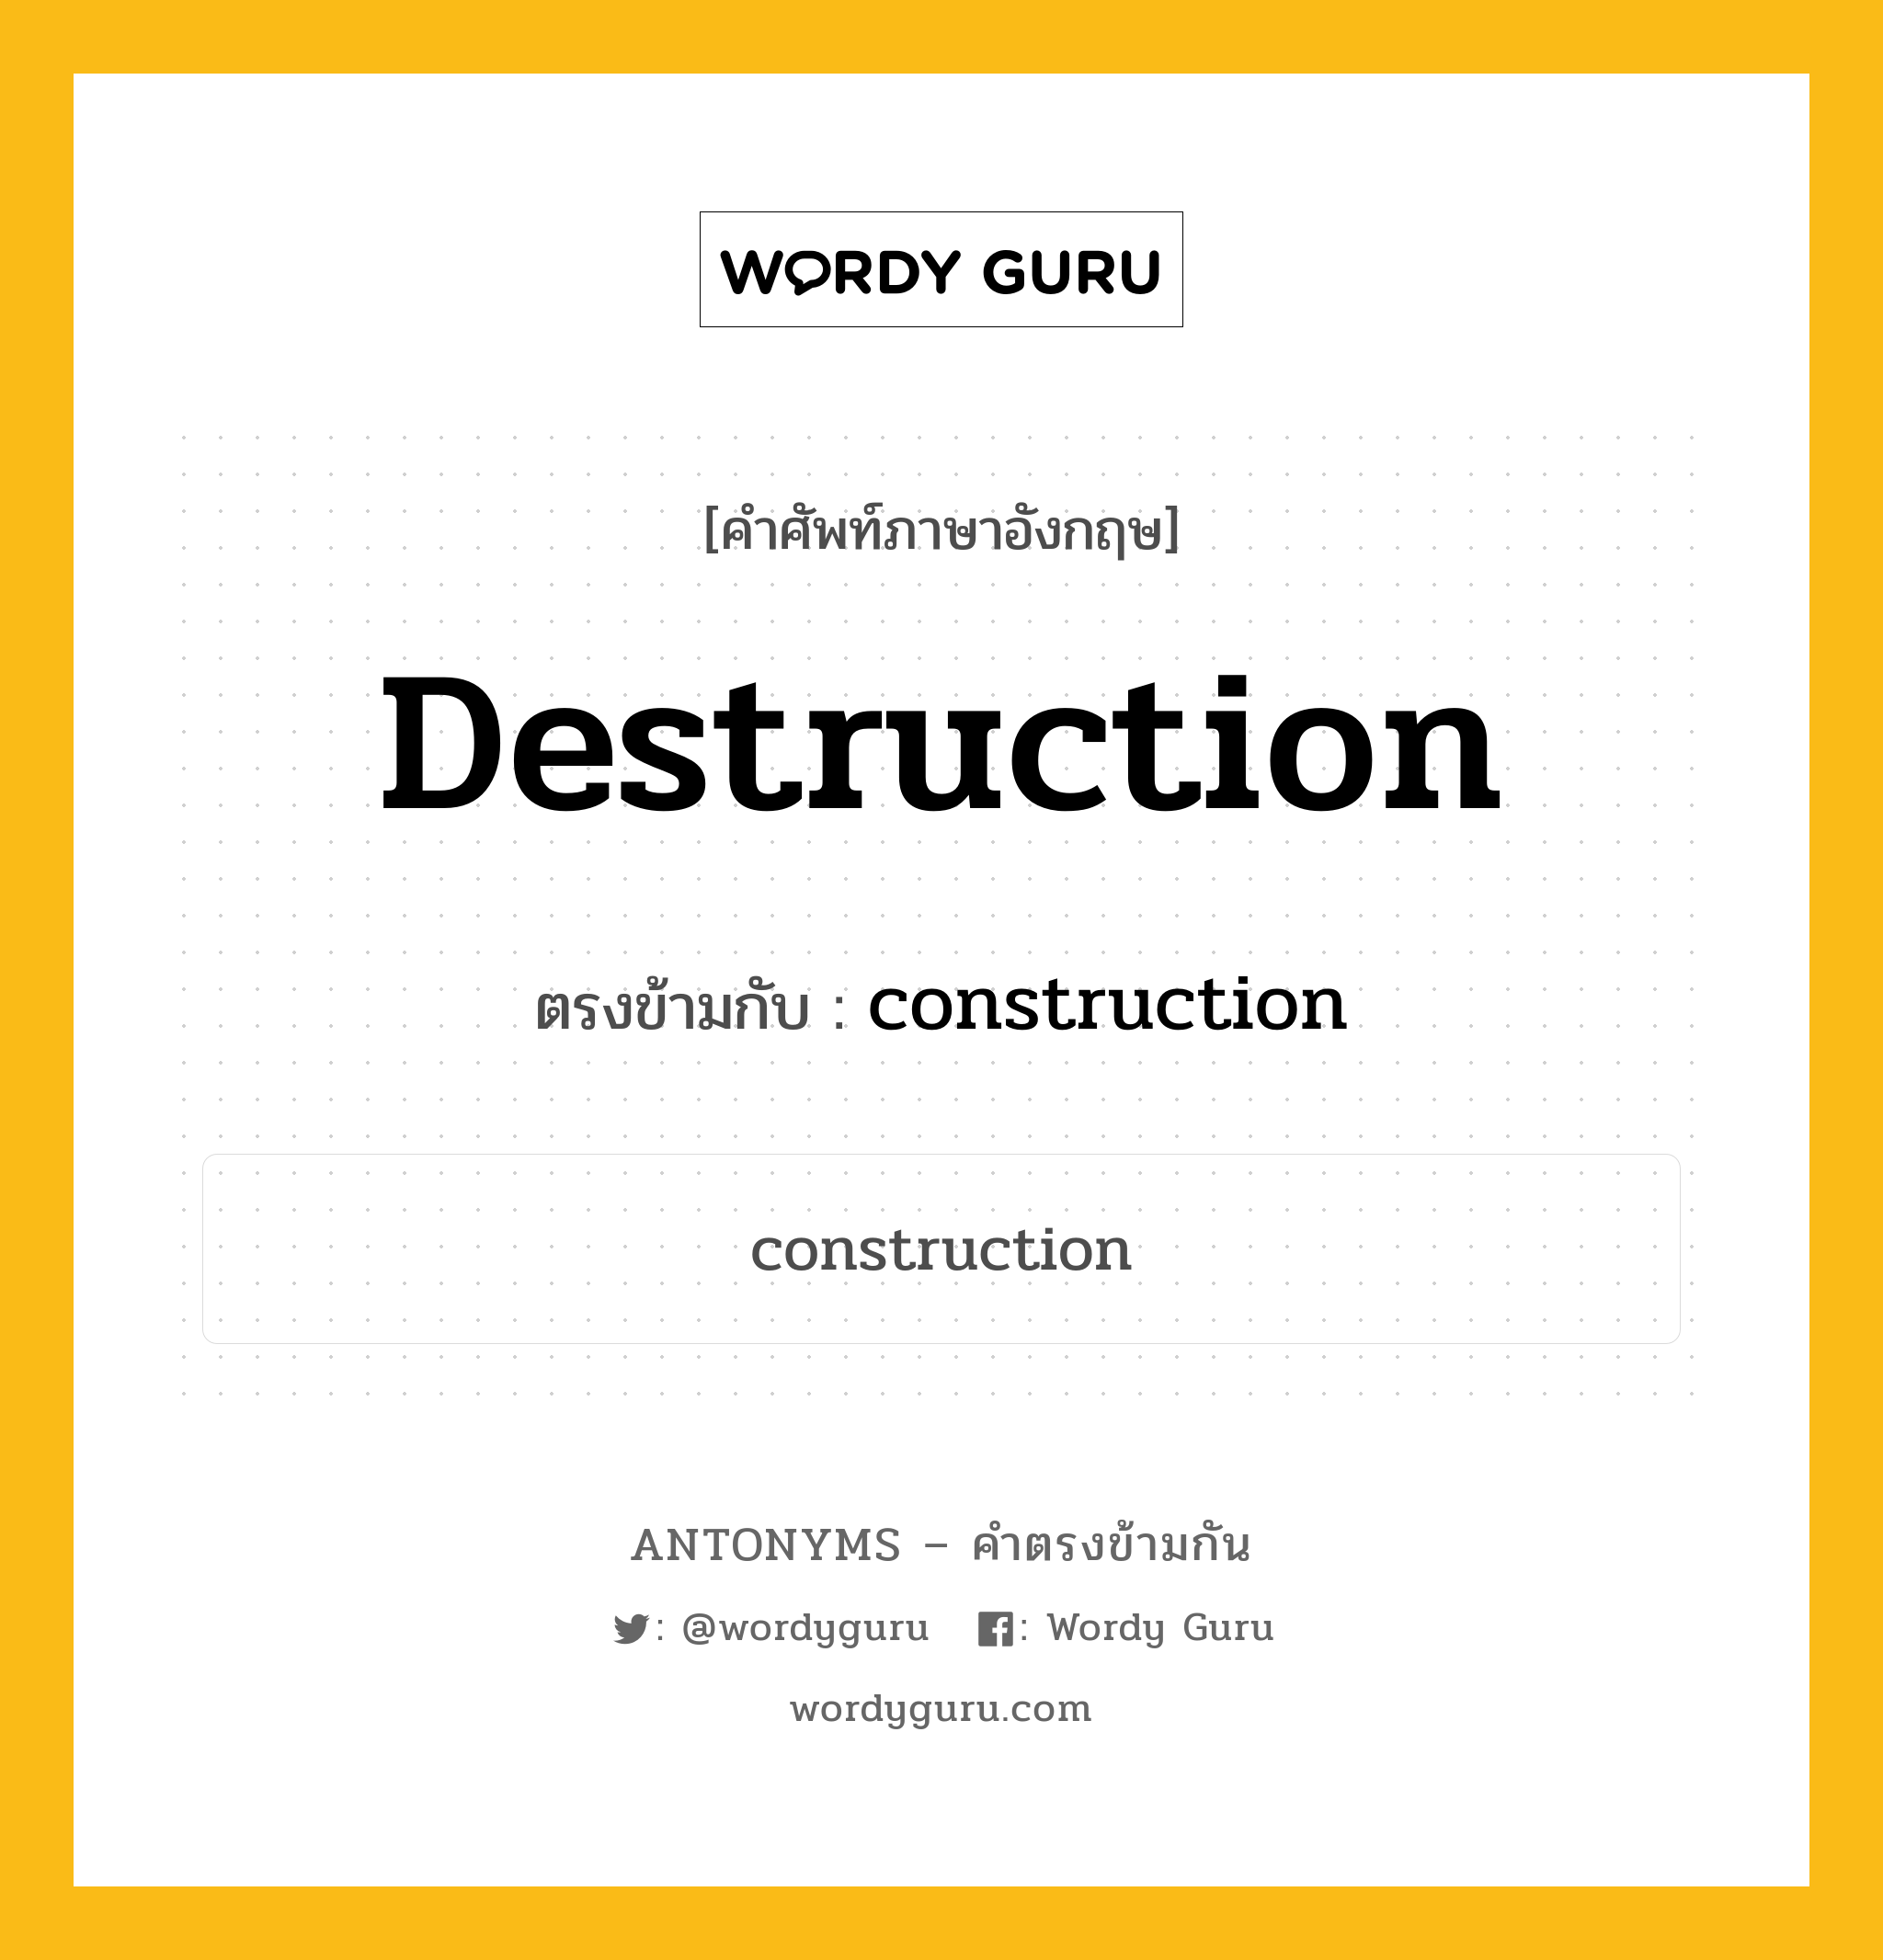 destruction เป็นคำตรงข้ามกับคำไหนบ้าง?, คำศัพท์ภาษาอังกฤษ destruction ตรงข้ามกับ construction หมวด construction